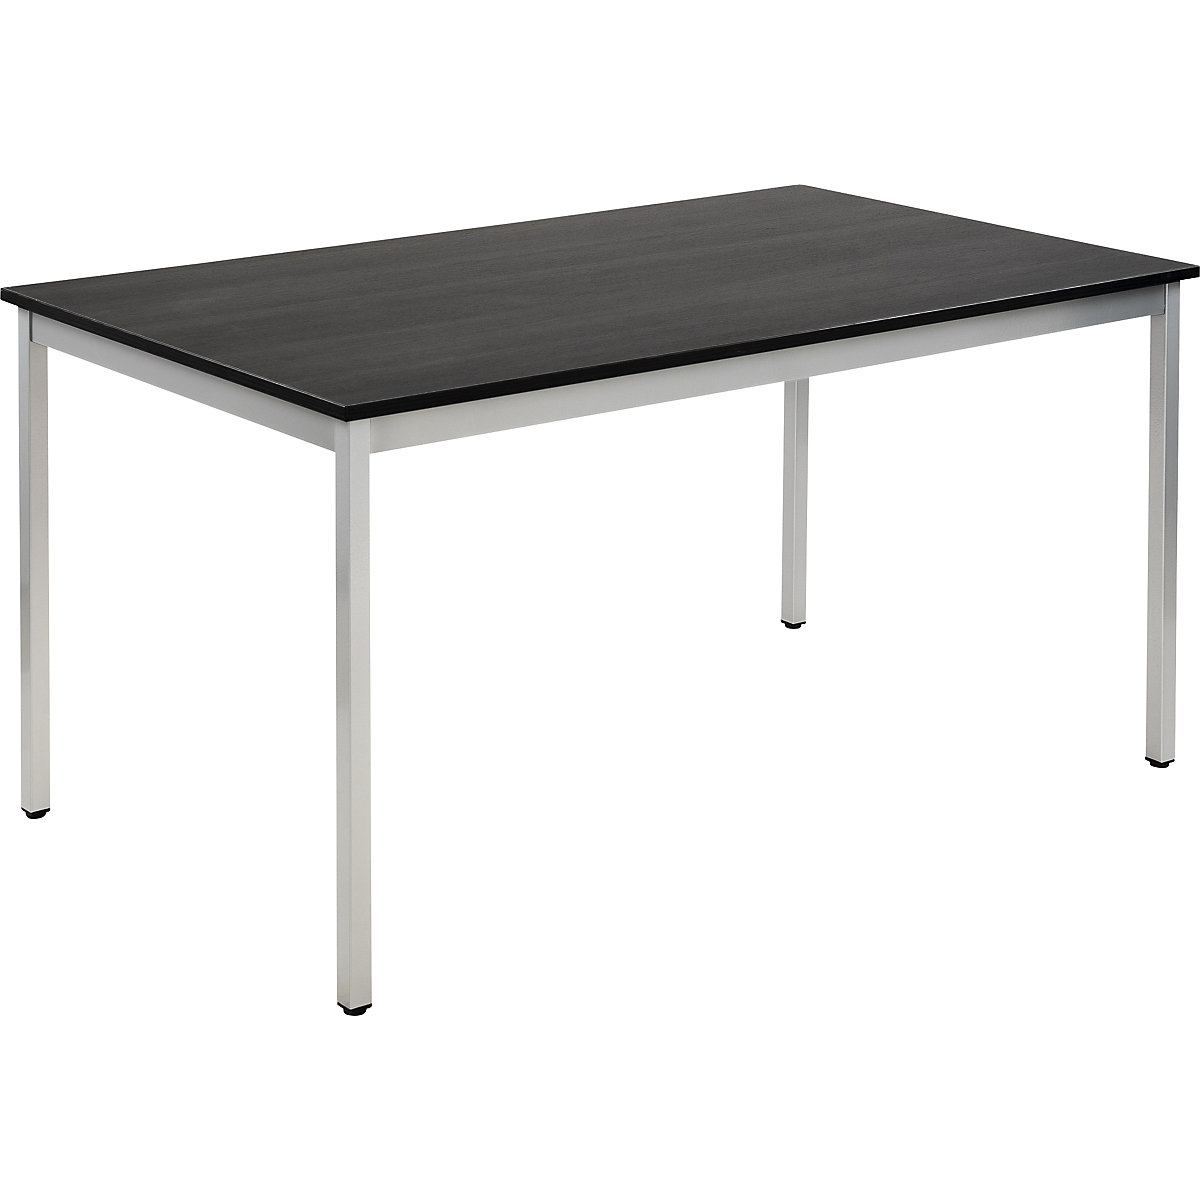 Table polyvalente – eurokraft basic, rectangulaire, l x h 1400 x 740 mm, profondeur 800 mm, plateau façon frêne gris foncé, piétement aluminium-15